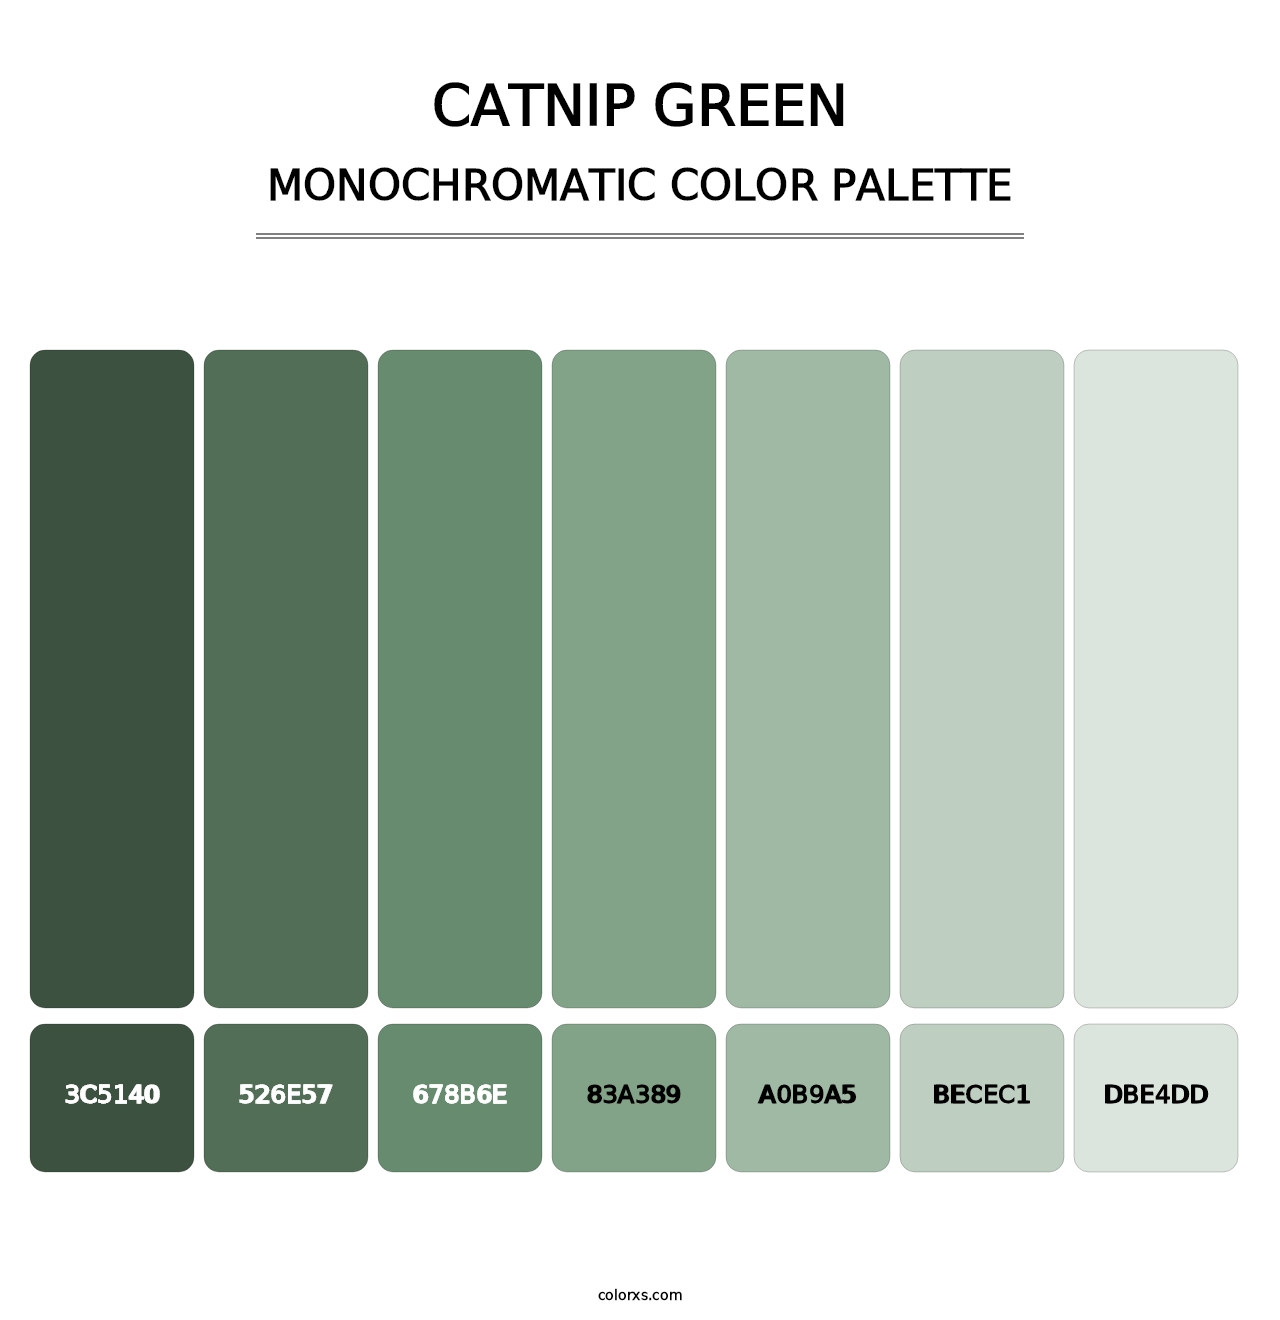 Catnip Green - Monochromatic Color Palette